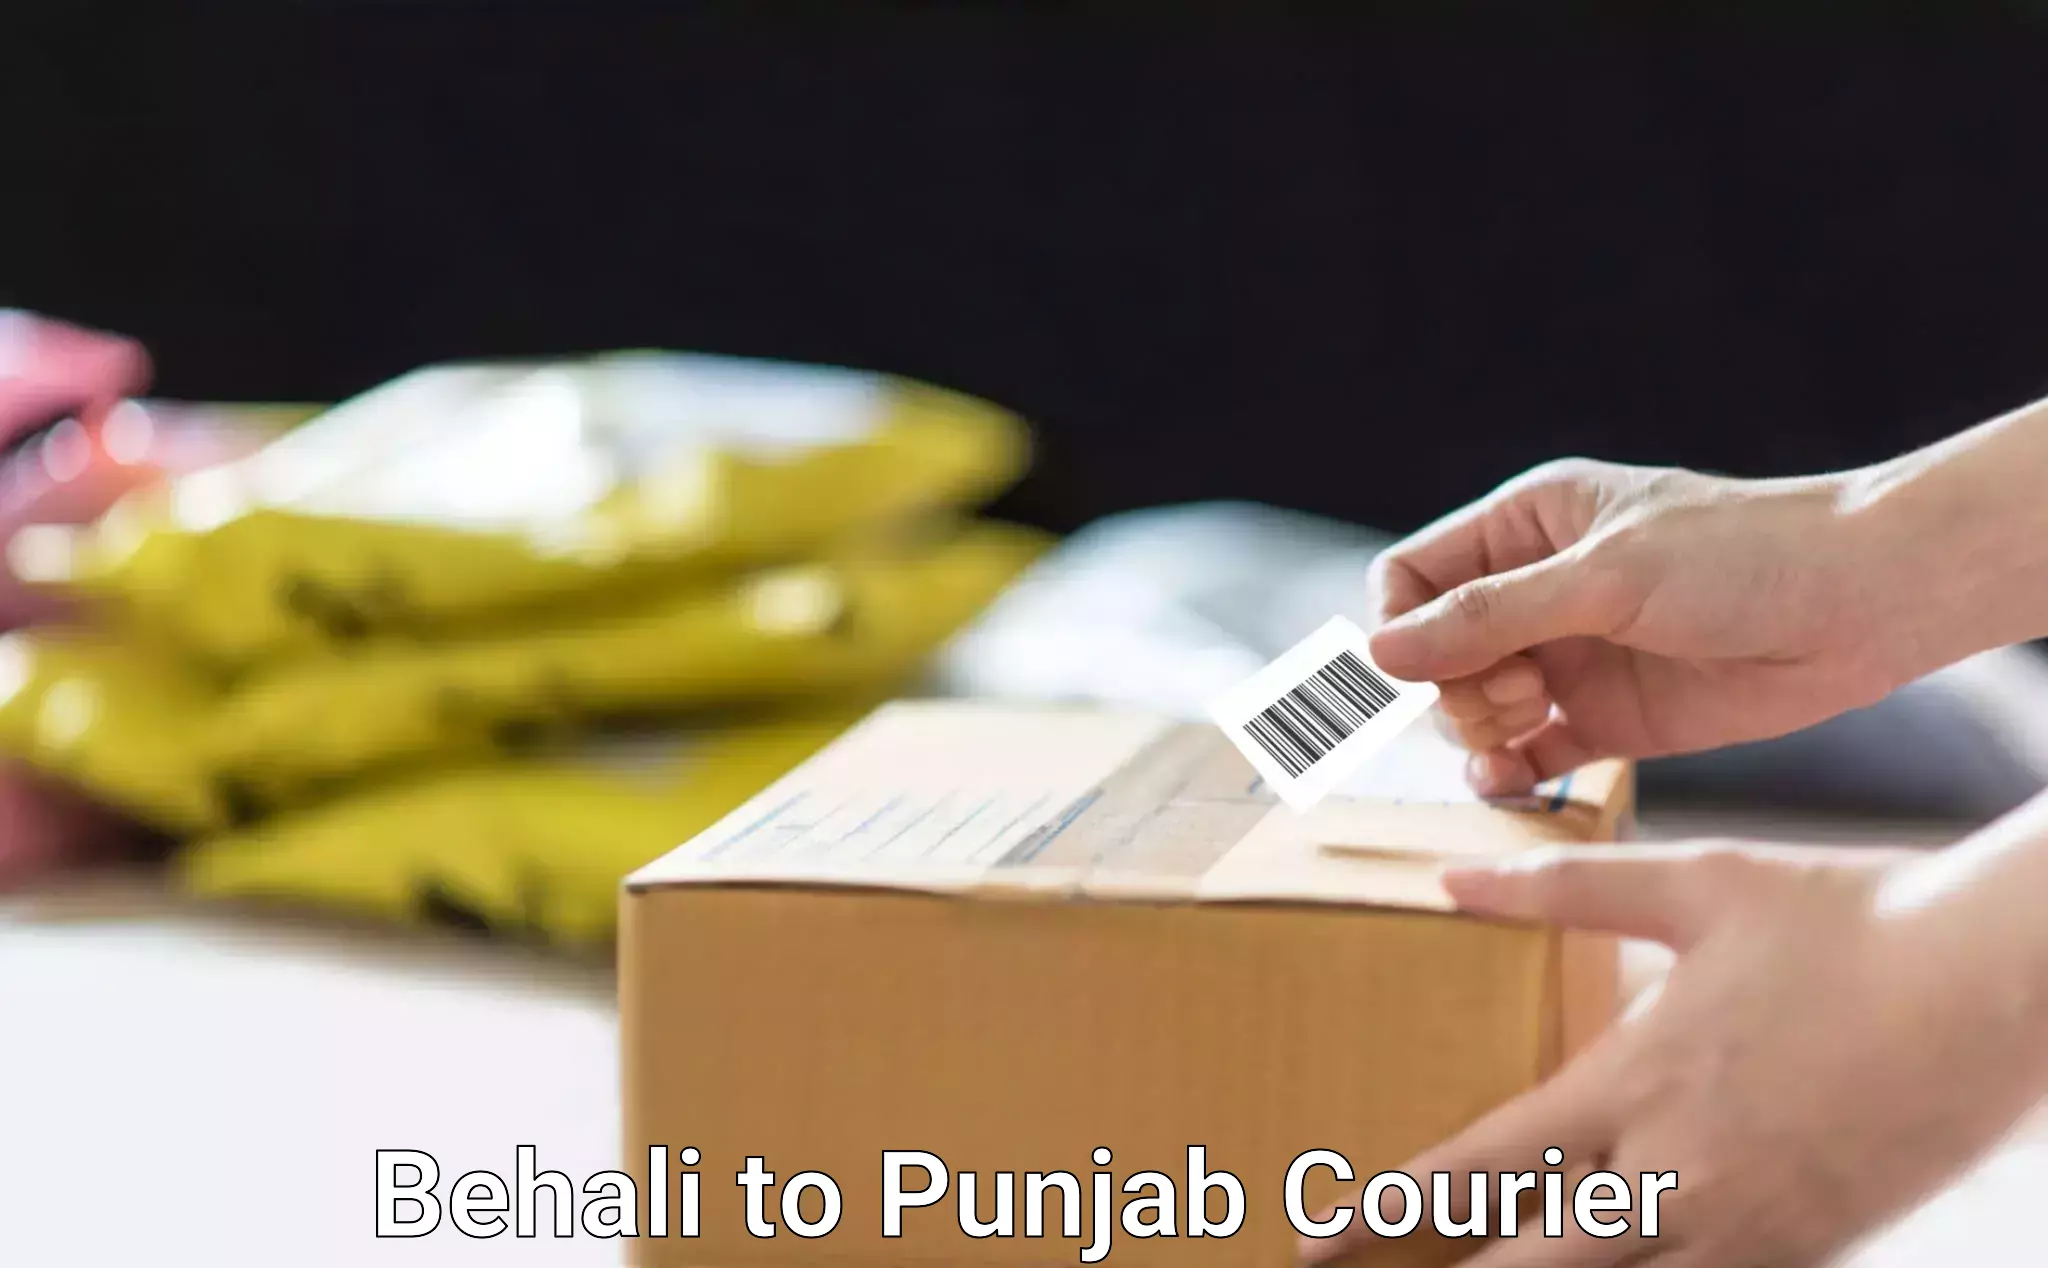 Courier service comparison Behali to Punjab